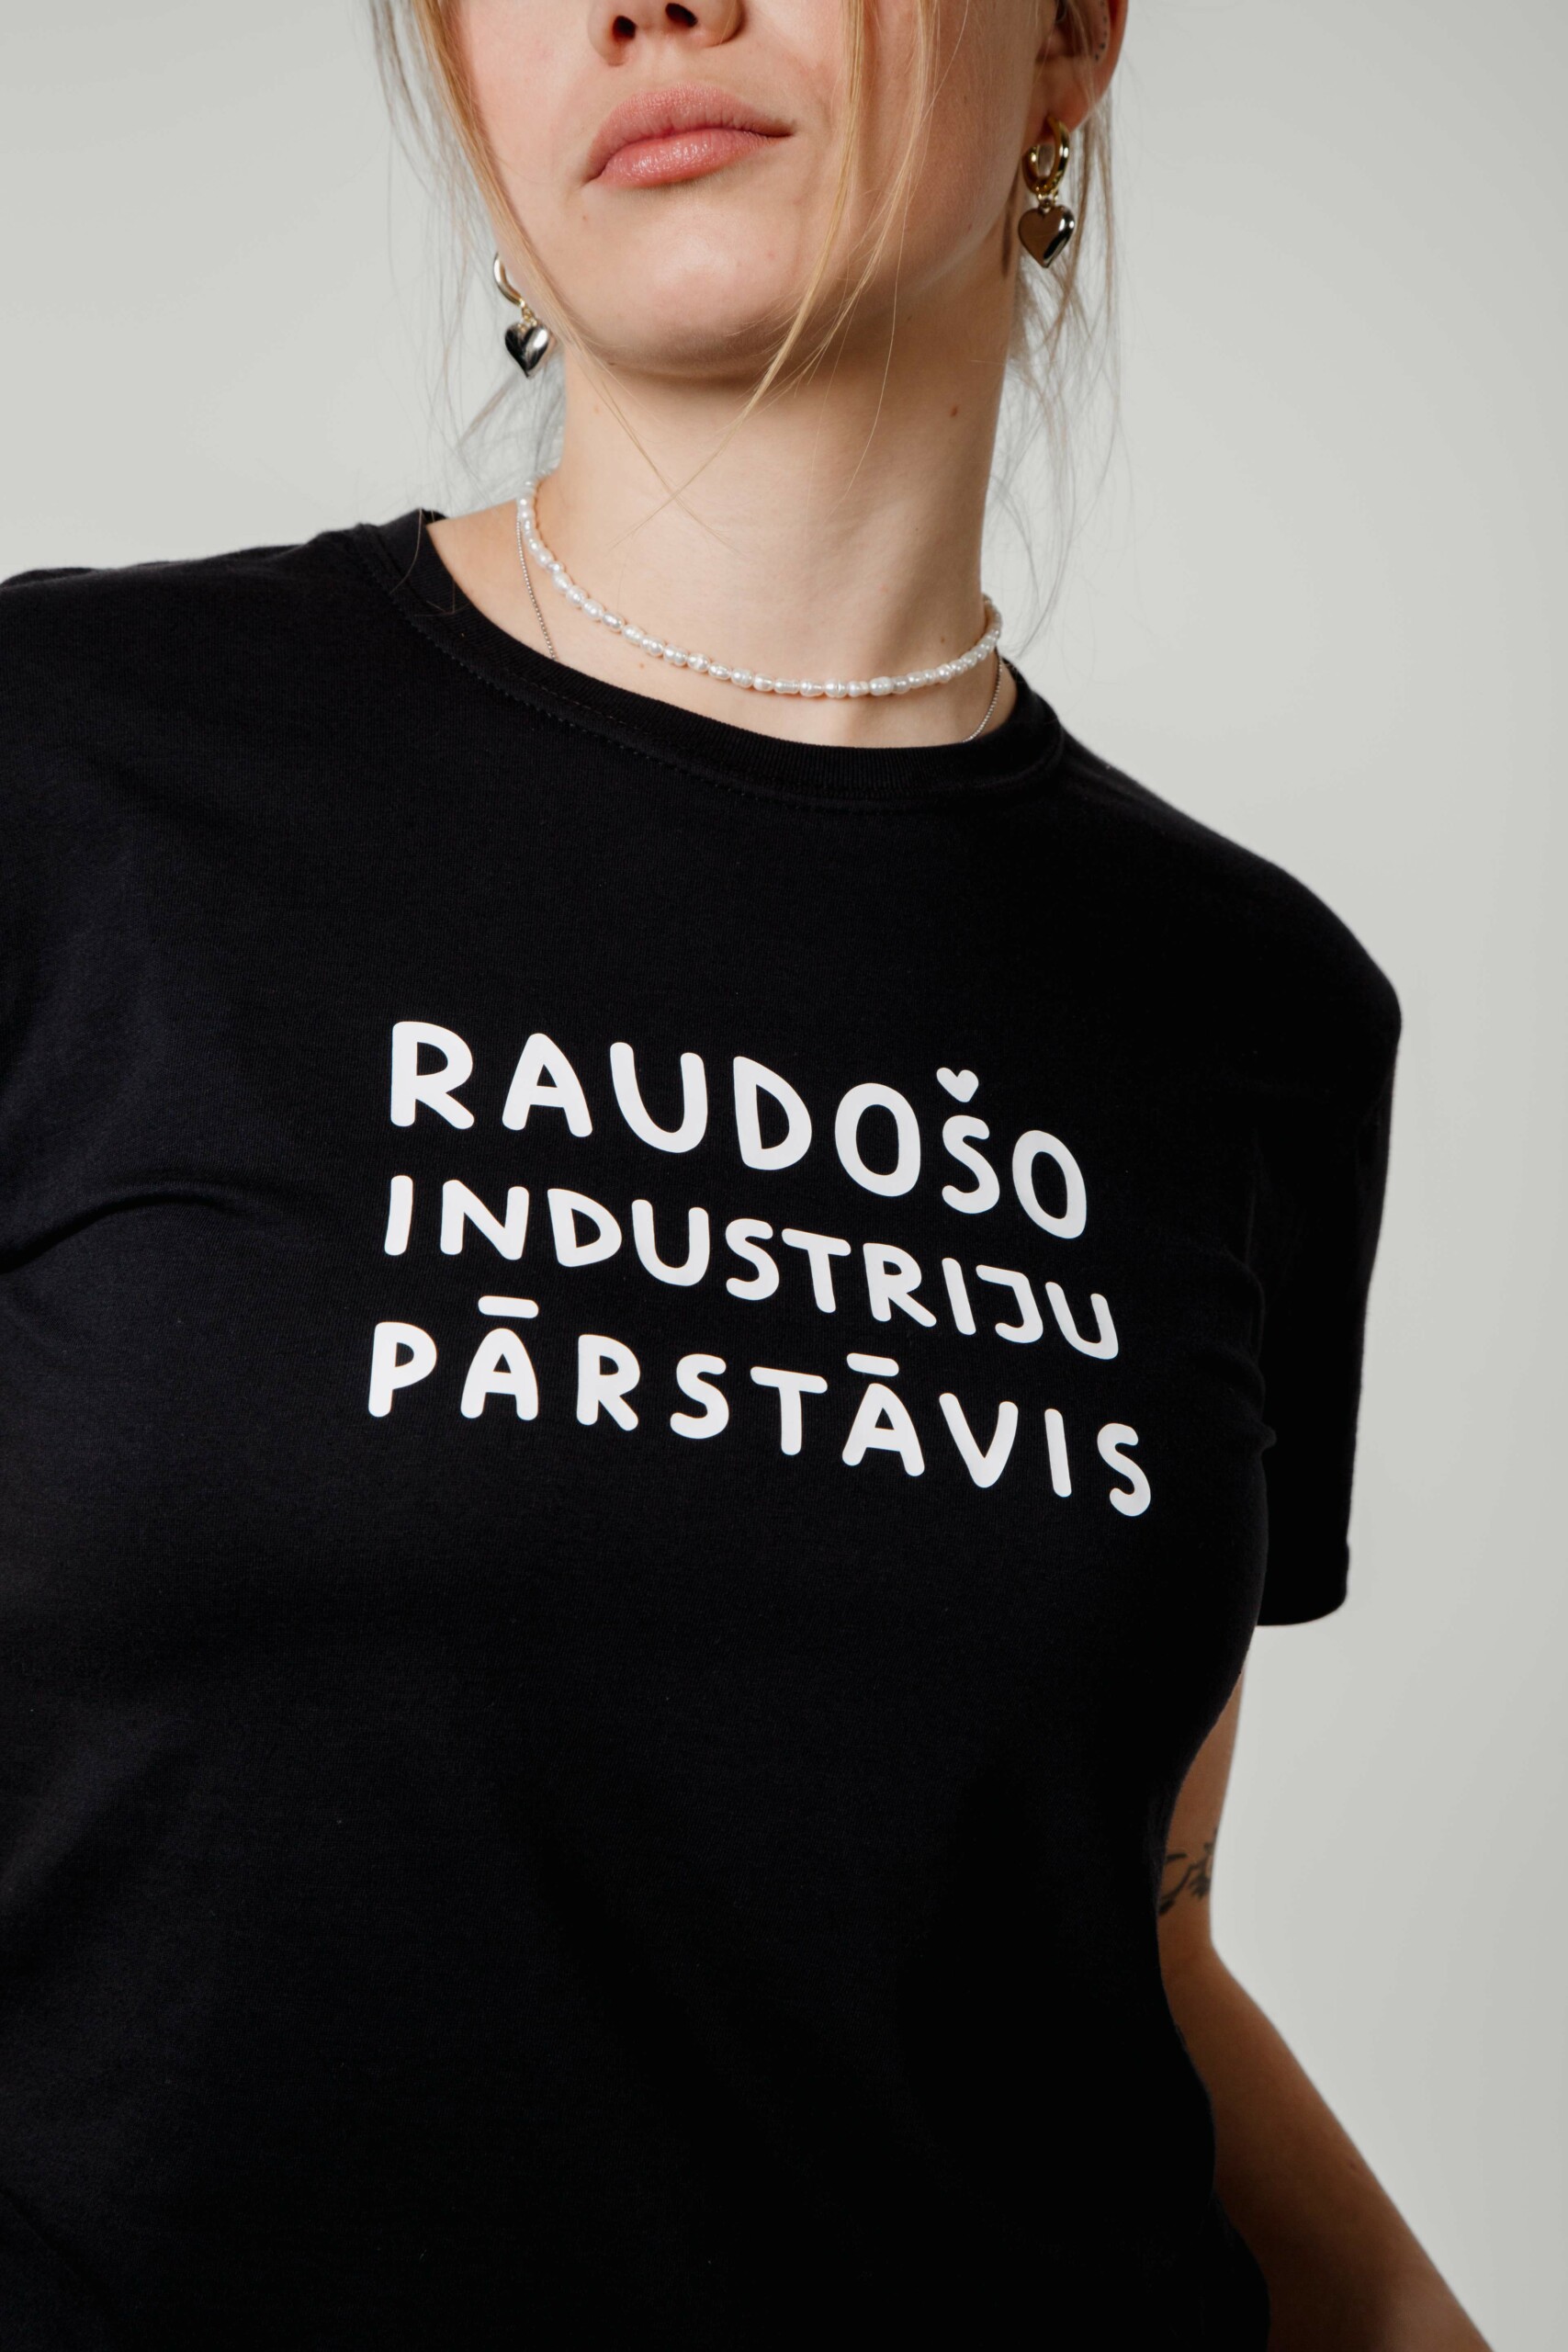 iidziiba Unisex t-shirt RAUDOŠO INDUSTRIJU PĀRSTĀVIS